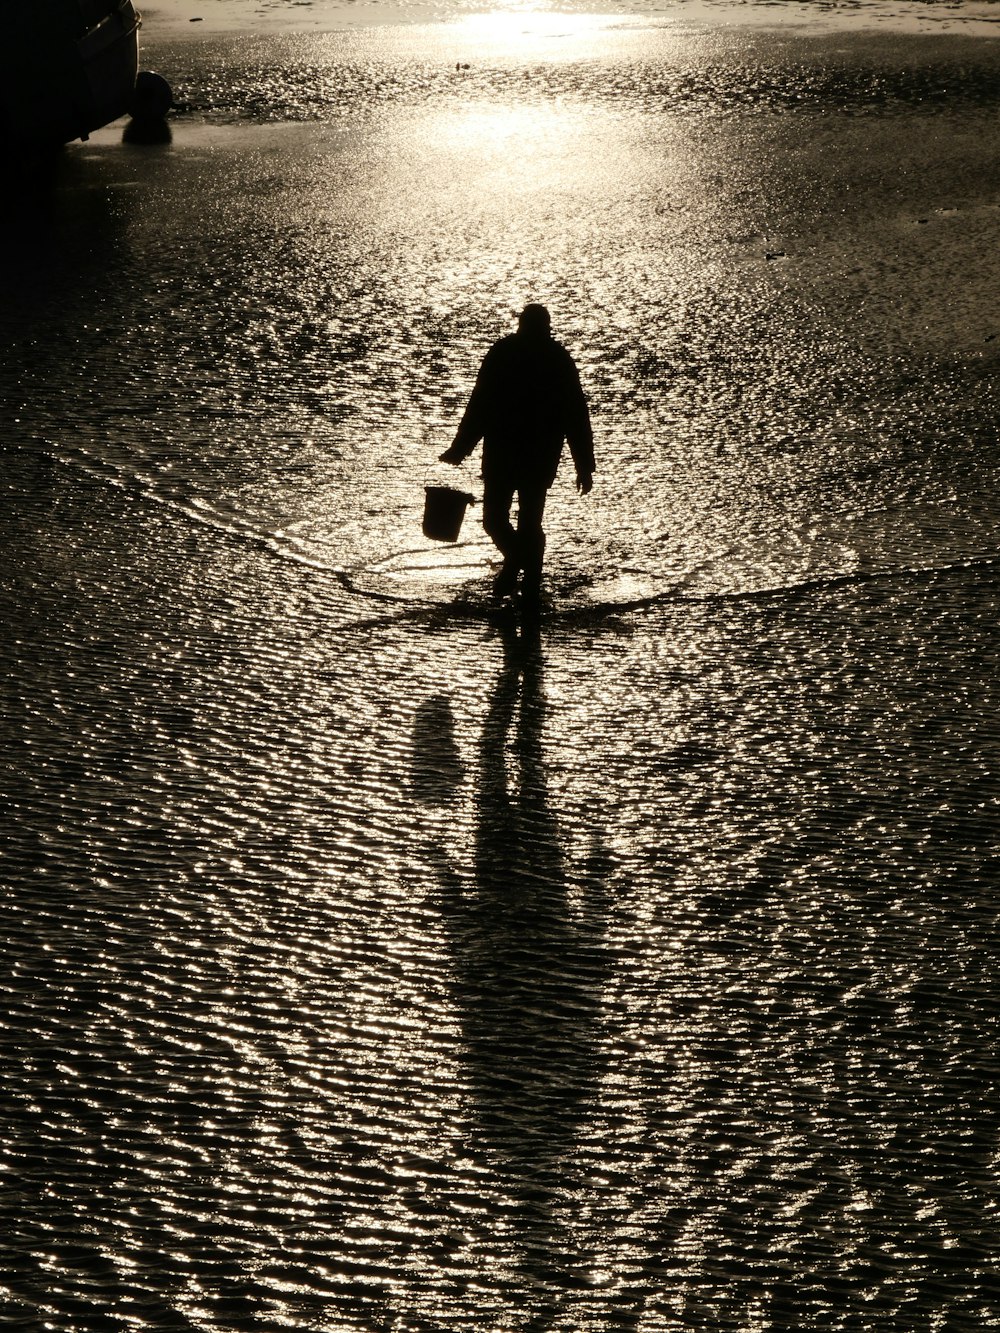 a man walking across a wet beach holding a bucket